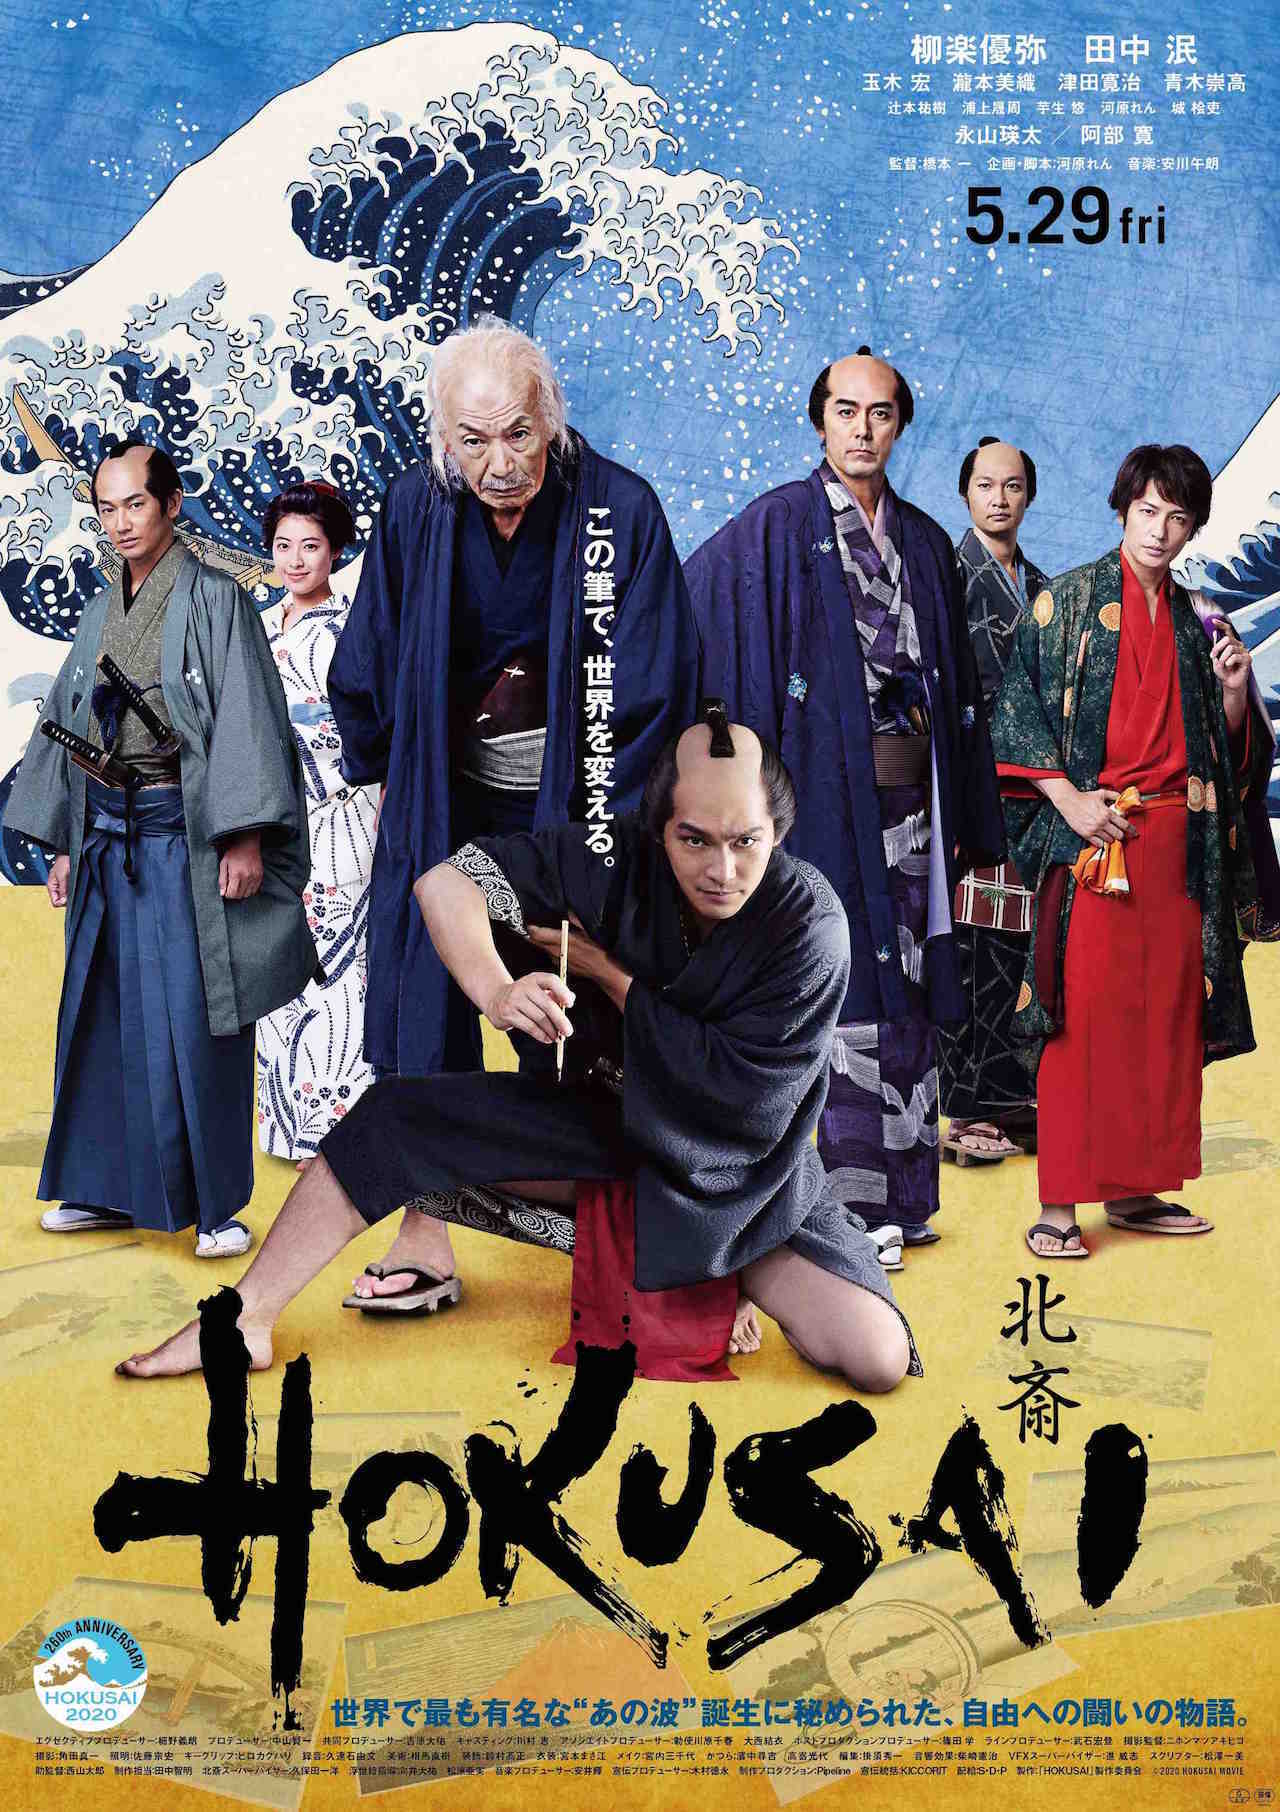 『HOKUSAI』ポスタービジュアル (c)hokusai2020